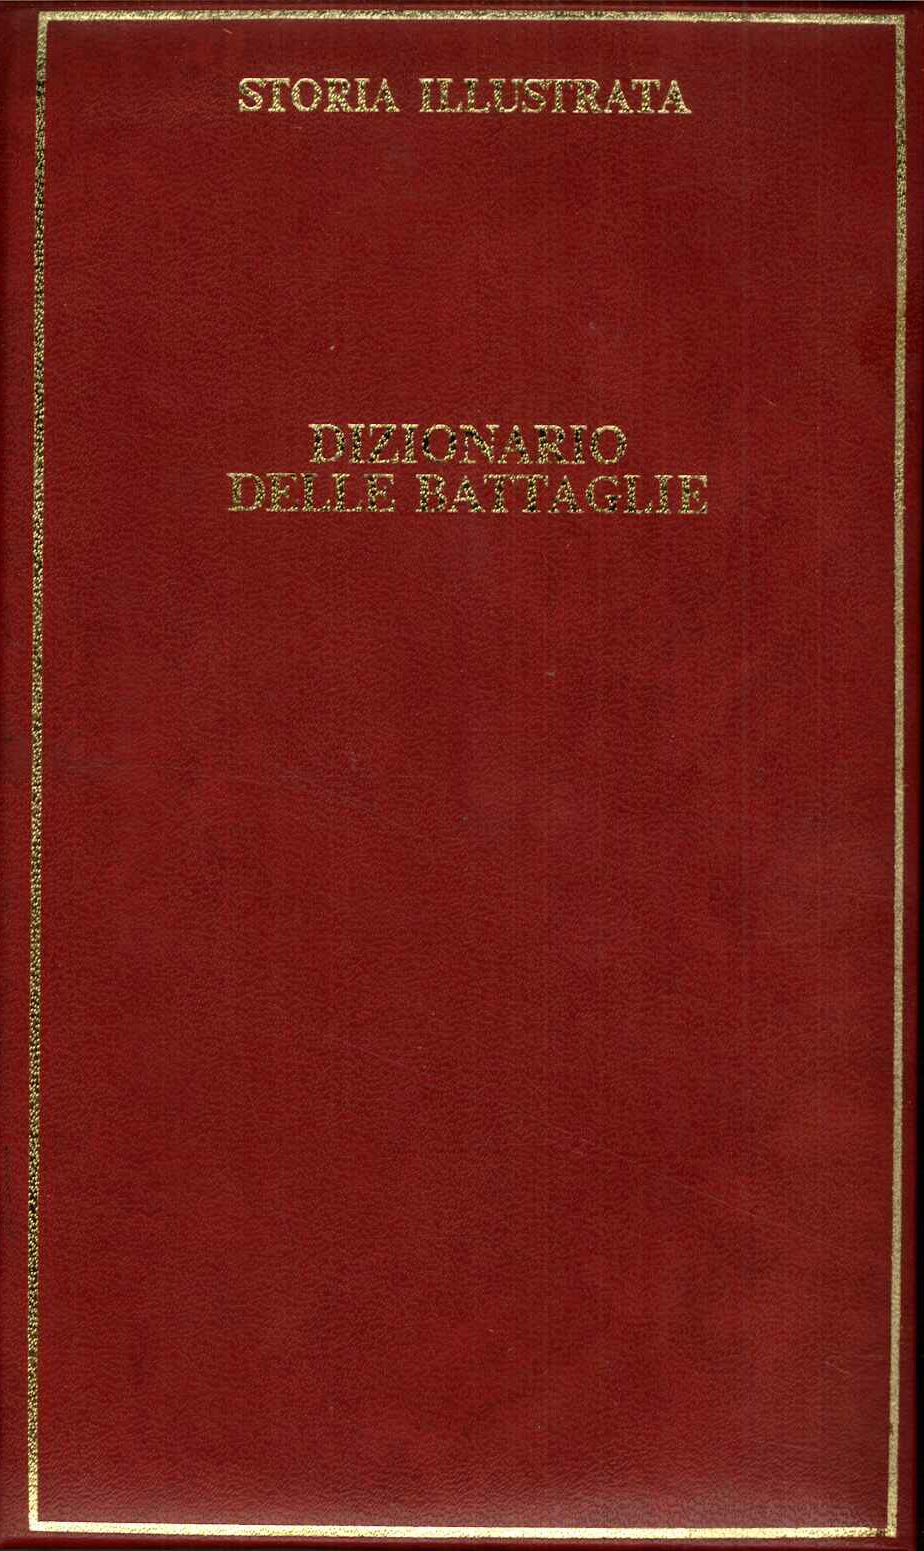 Dizionario delle Battaglie. Storia illustrata